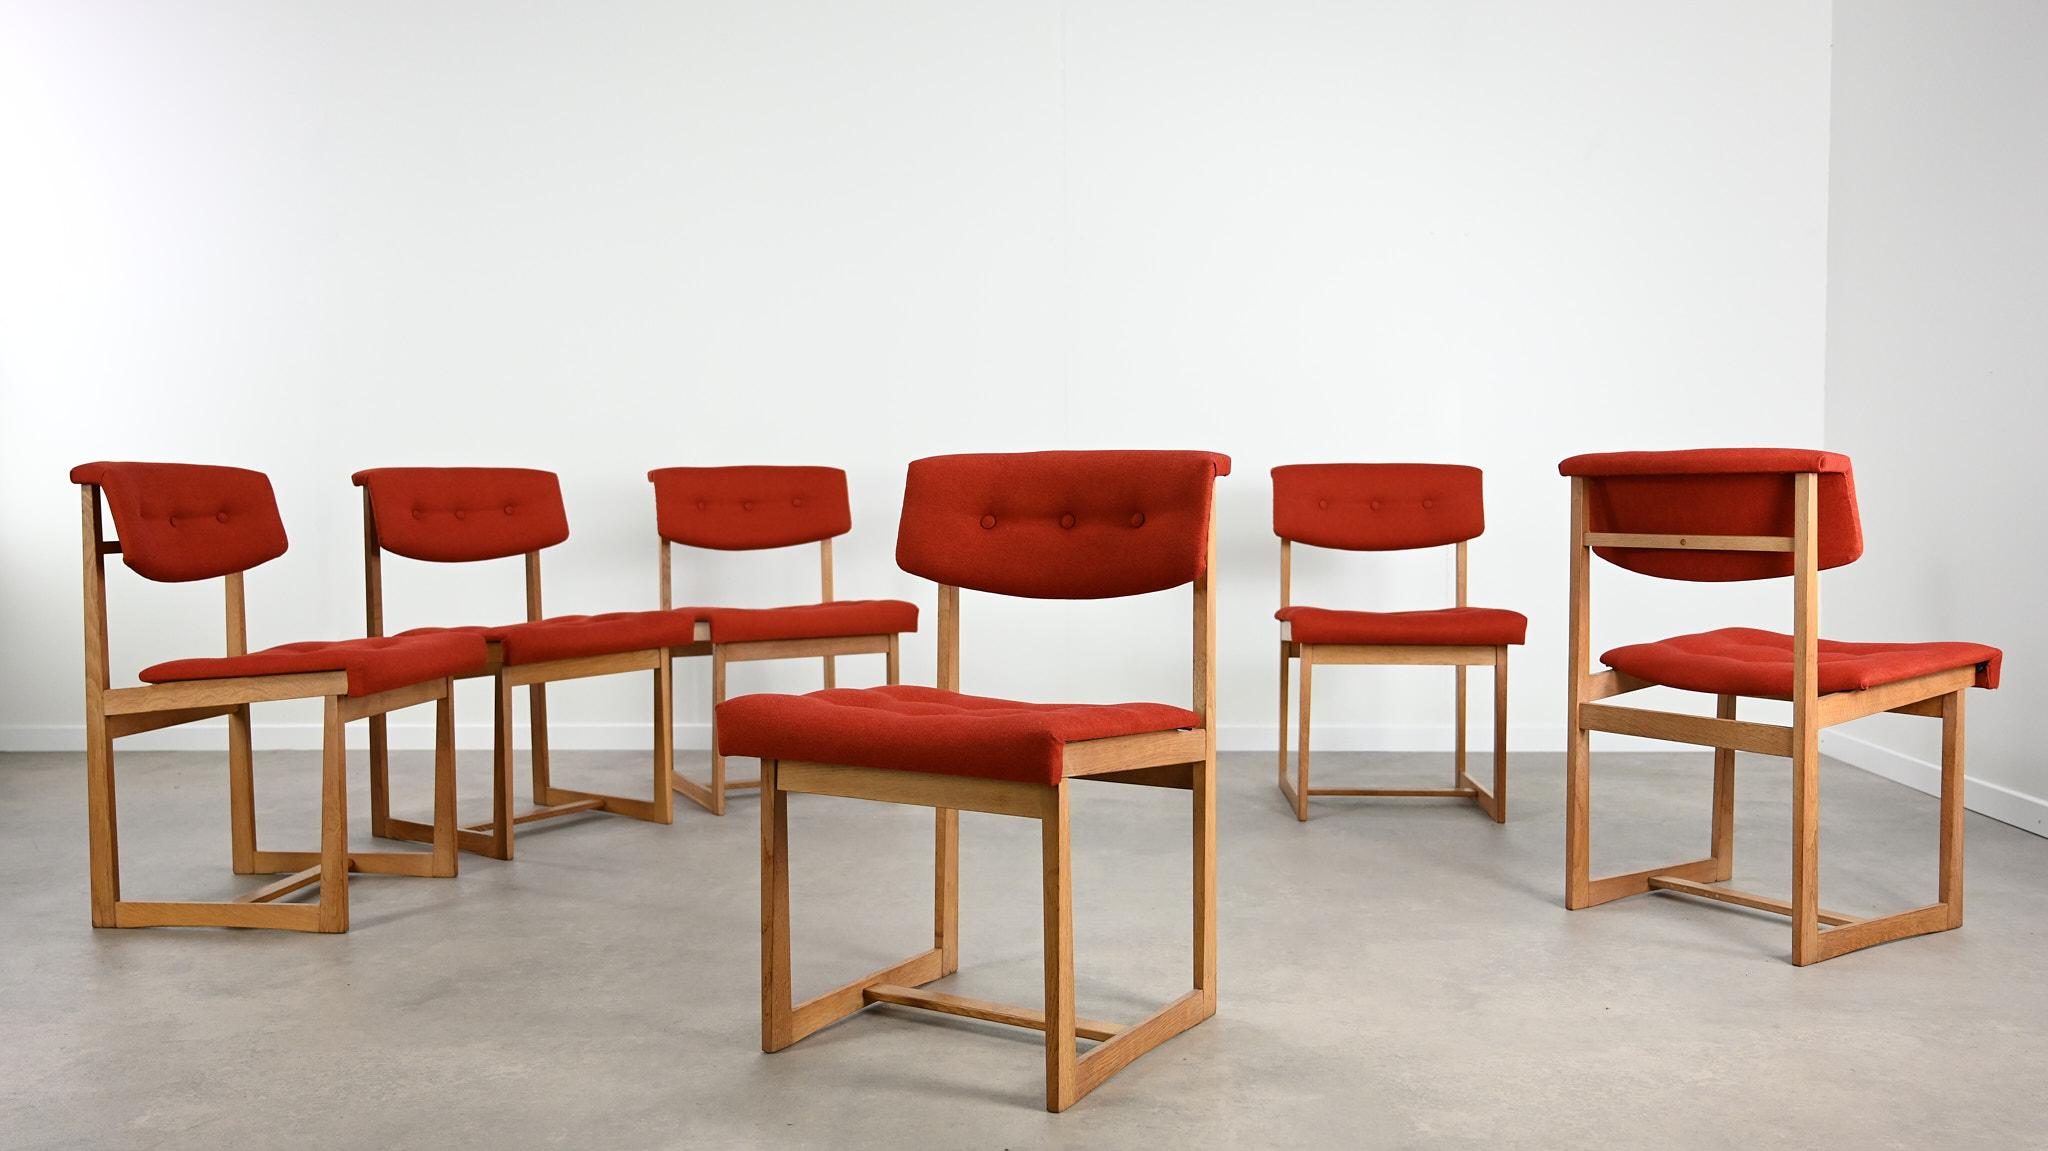 Rare ensemble de 6 chaises, par le designer danois Henning Sørensen pour Hos Dan-Ex. Dossier et pad d'assise tapissés en tissu rouge corail, structures en chêne massif. Petites traces d'usage et légère patine du temps sur les structures, très bon